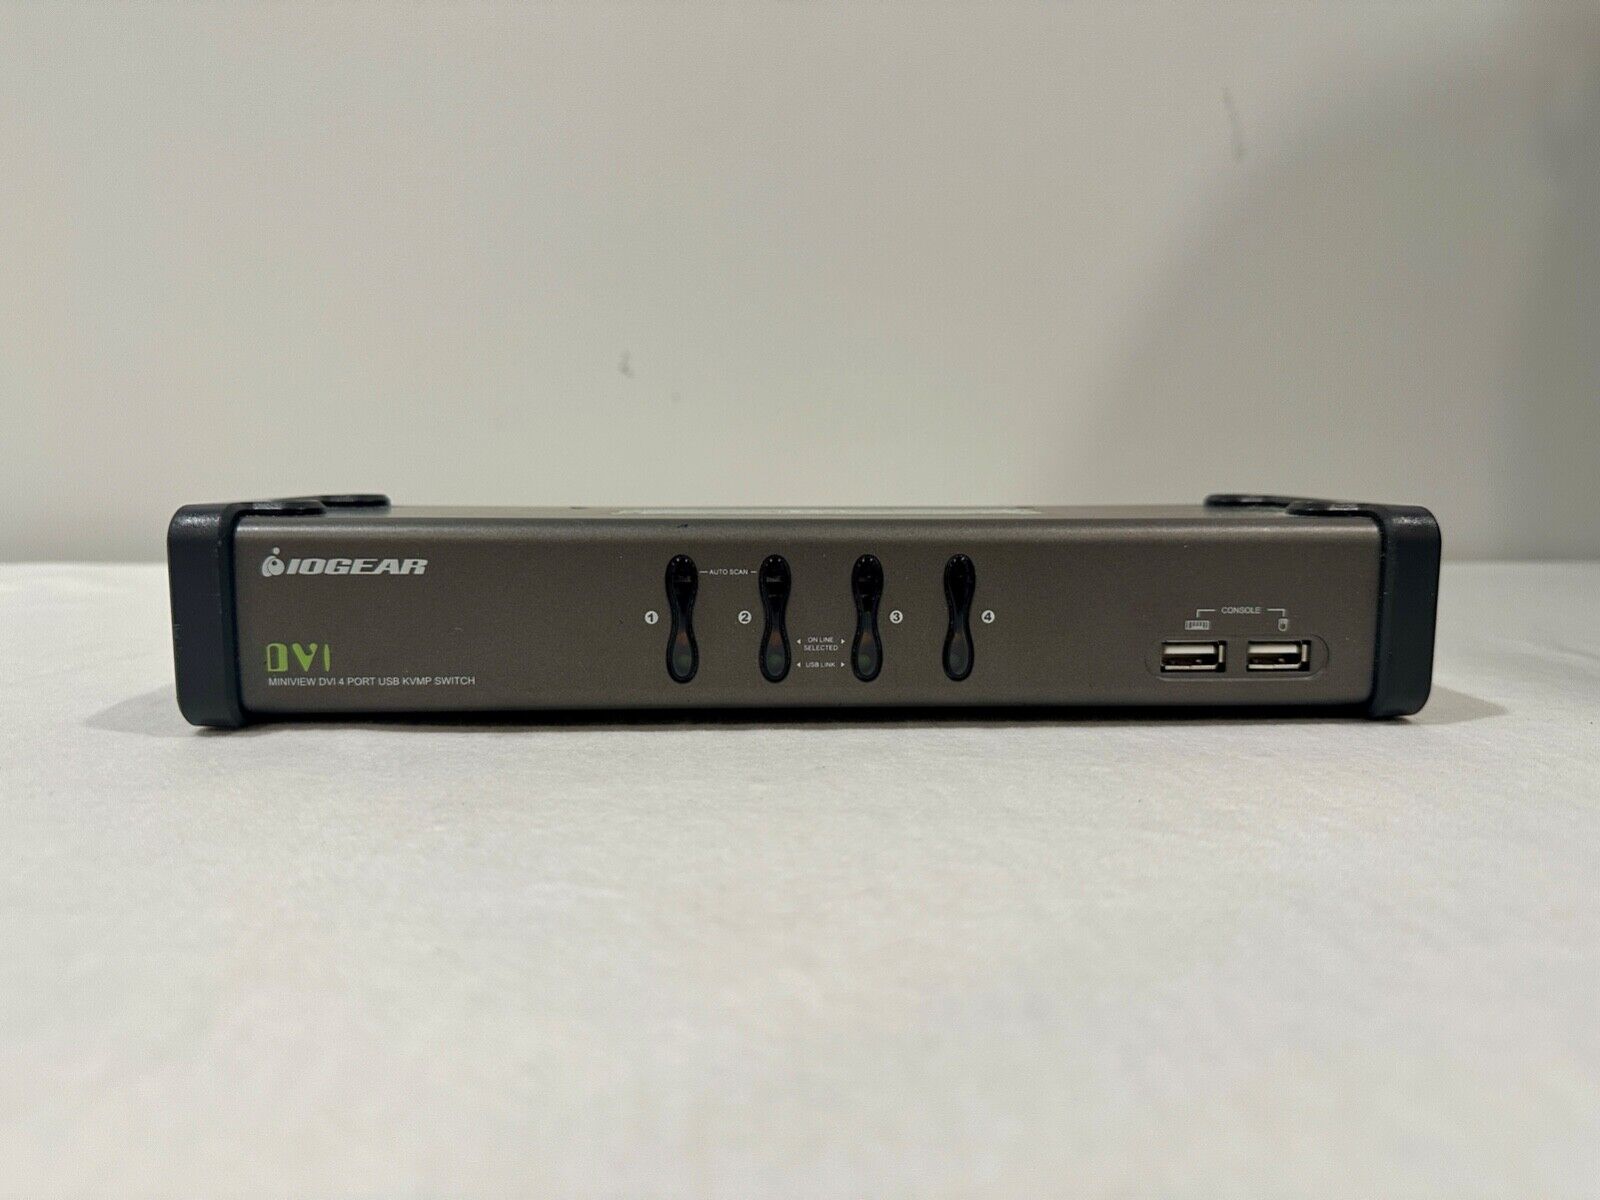 IOGEAR Miniview DVI 4-Port USB KVMP Switch w/ Cables